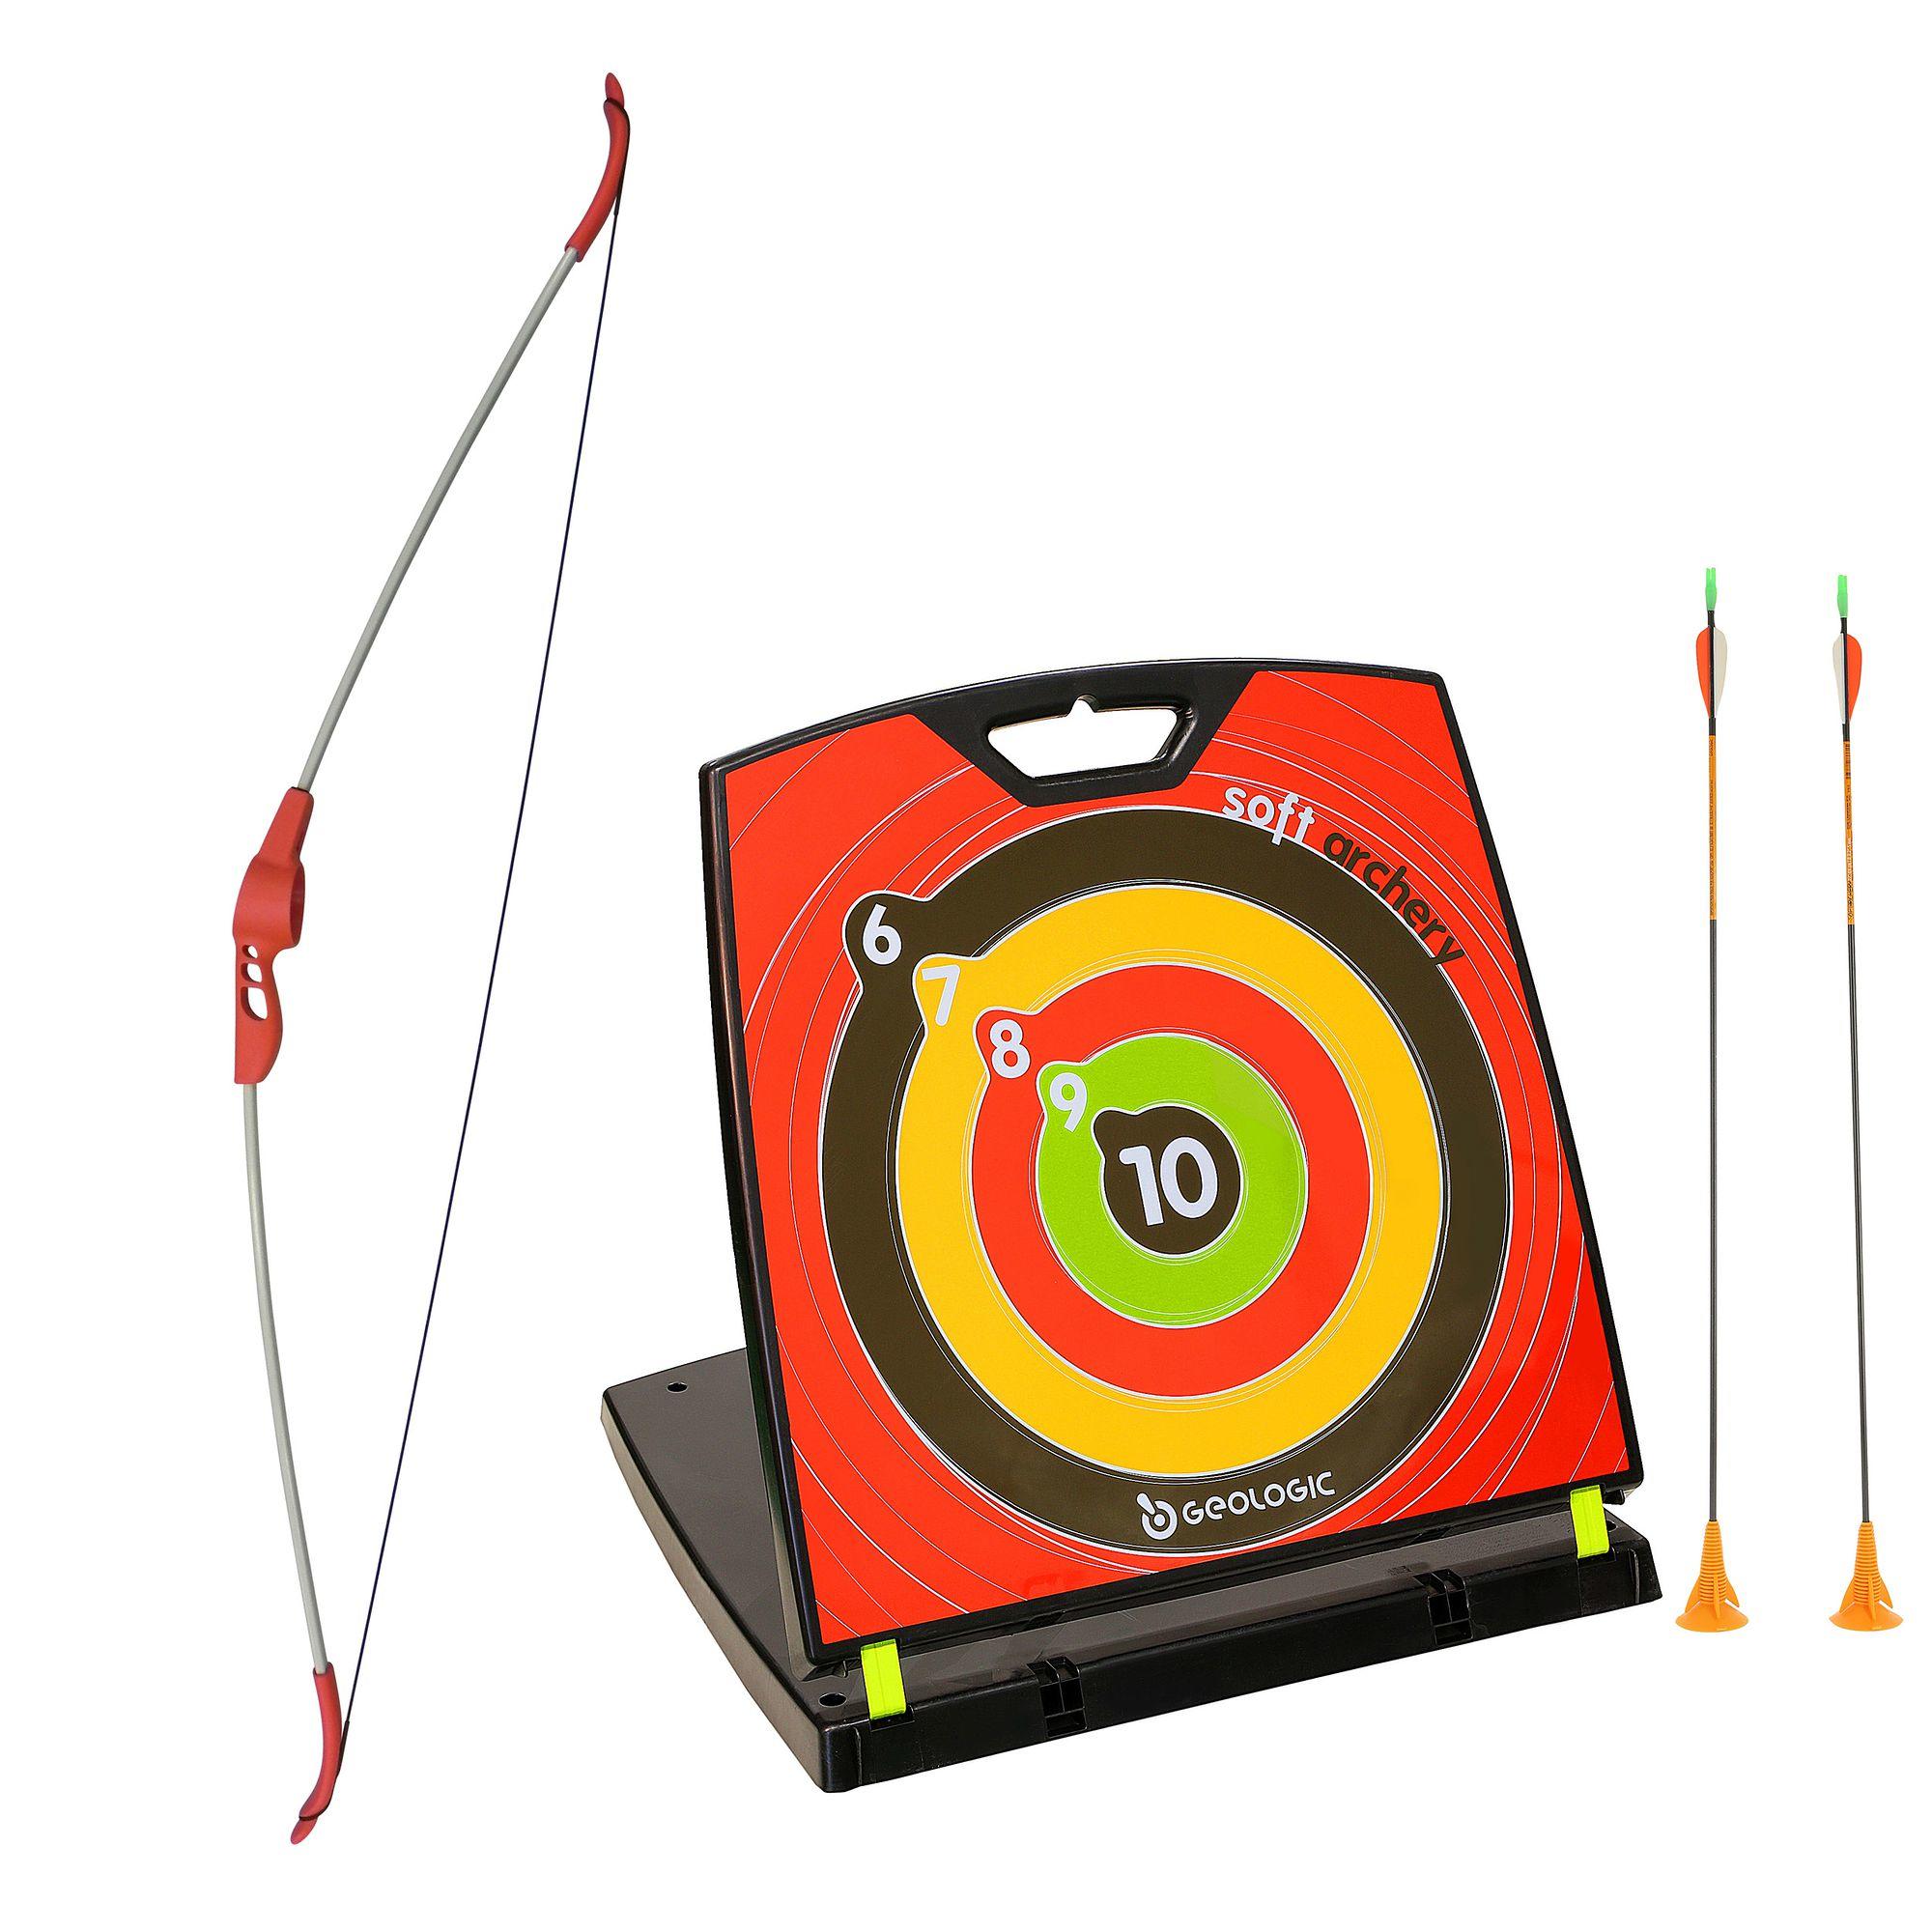 decathlon bow and arrow set